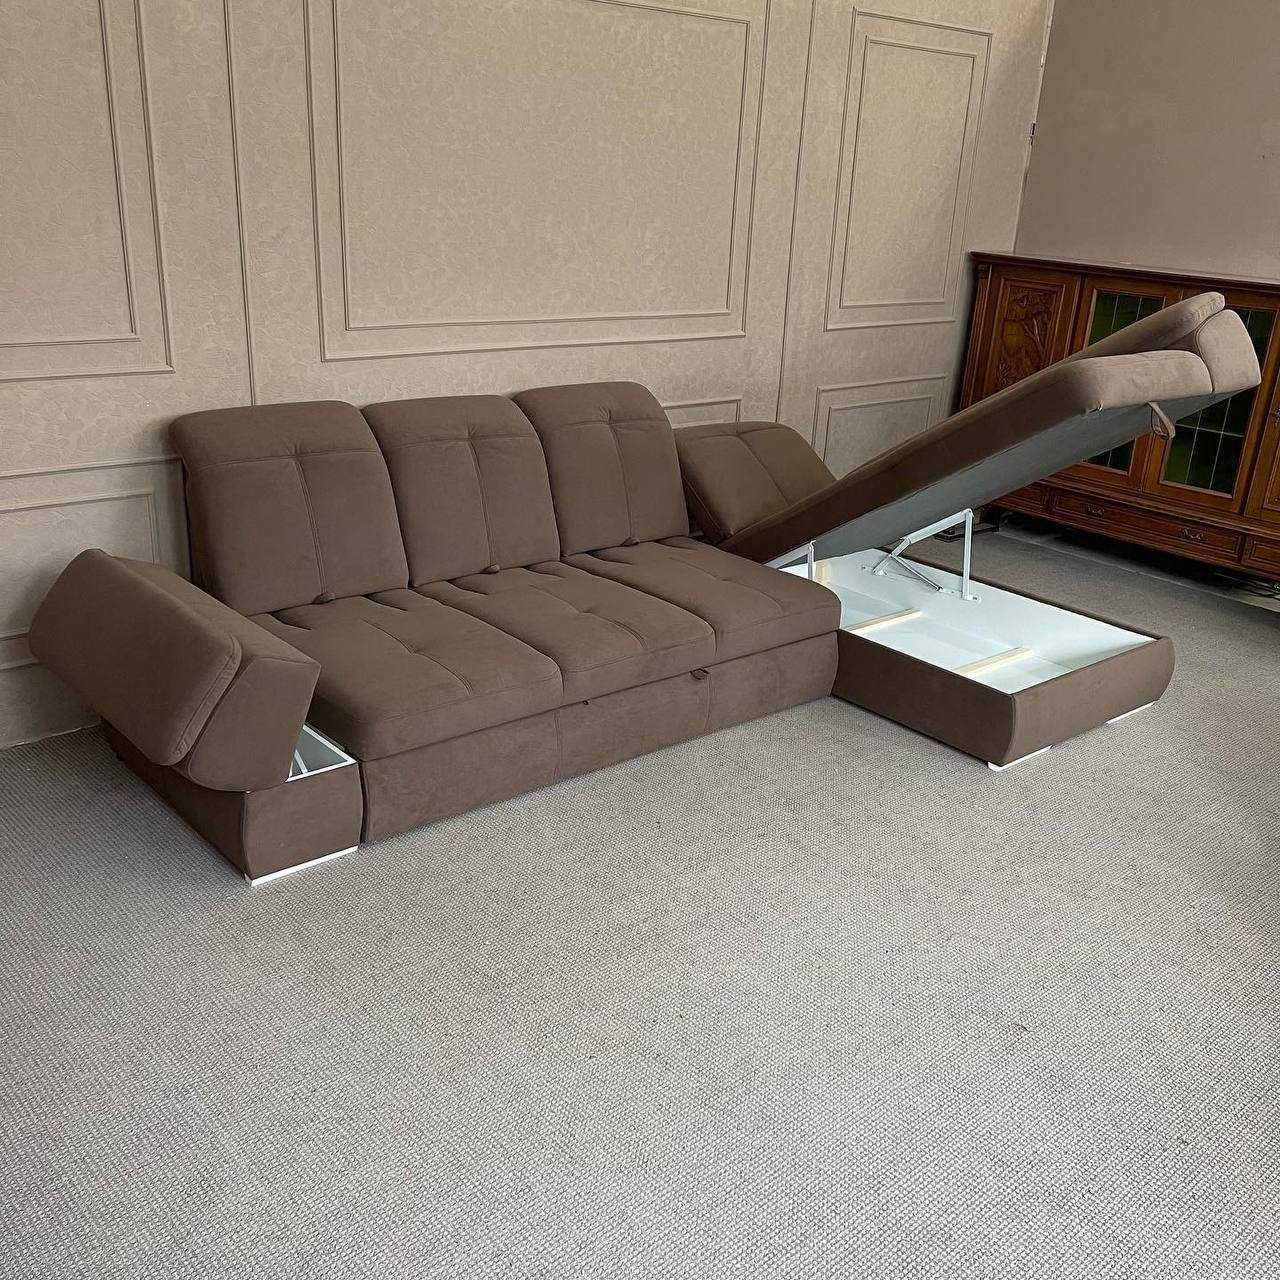 М'який розкладний диван г-подібної форми